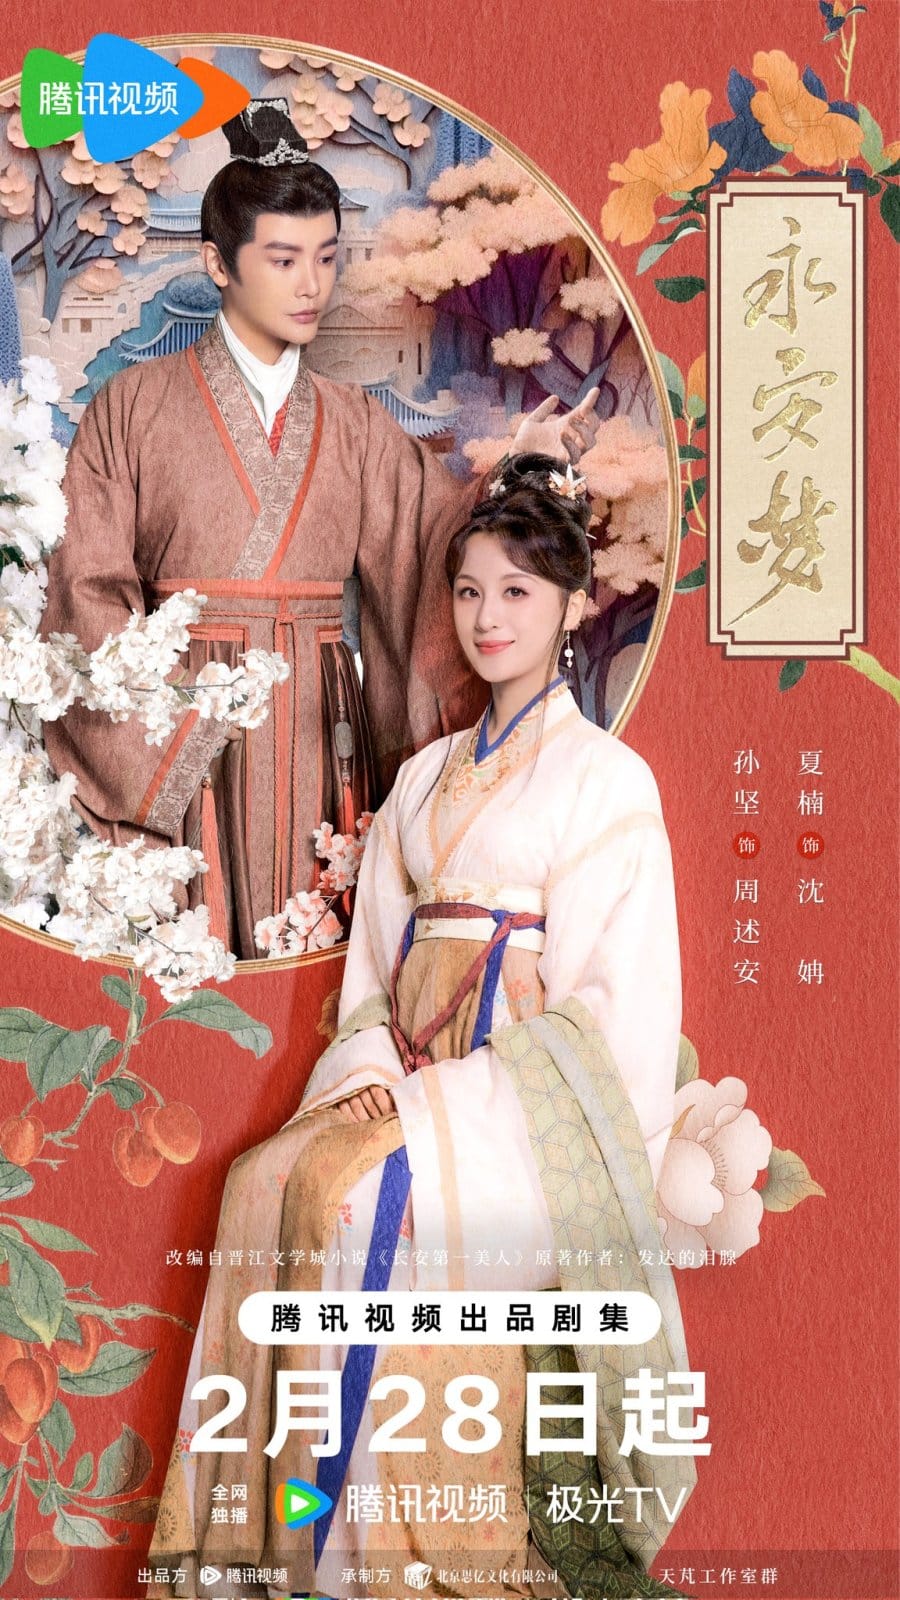 Премьера дорамы с Сюй Чжэн Си и Оуян Наной "Мечта Юнъань"